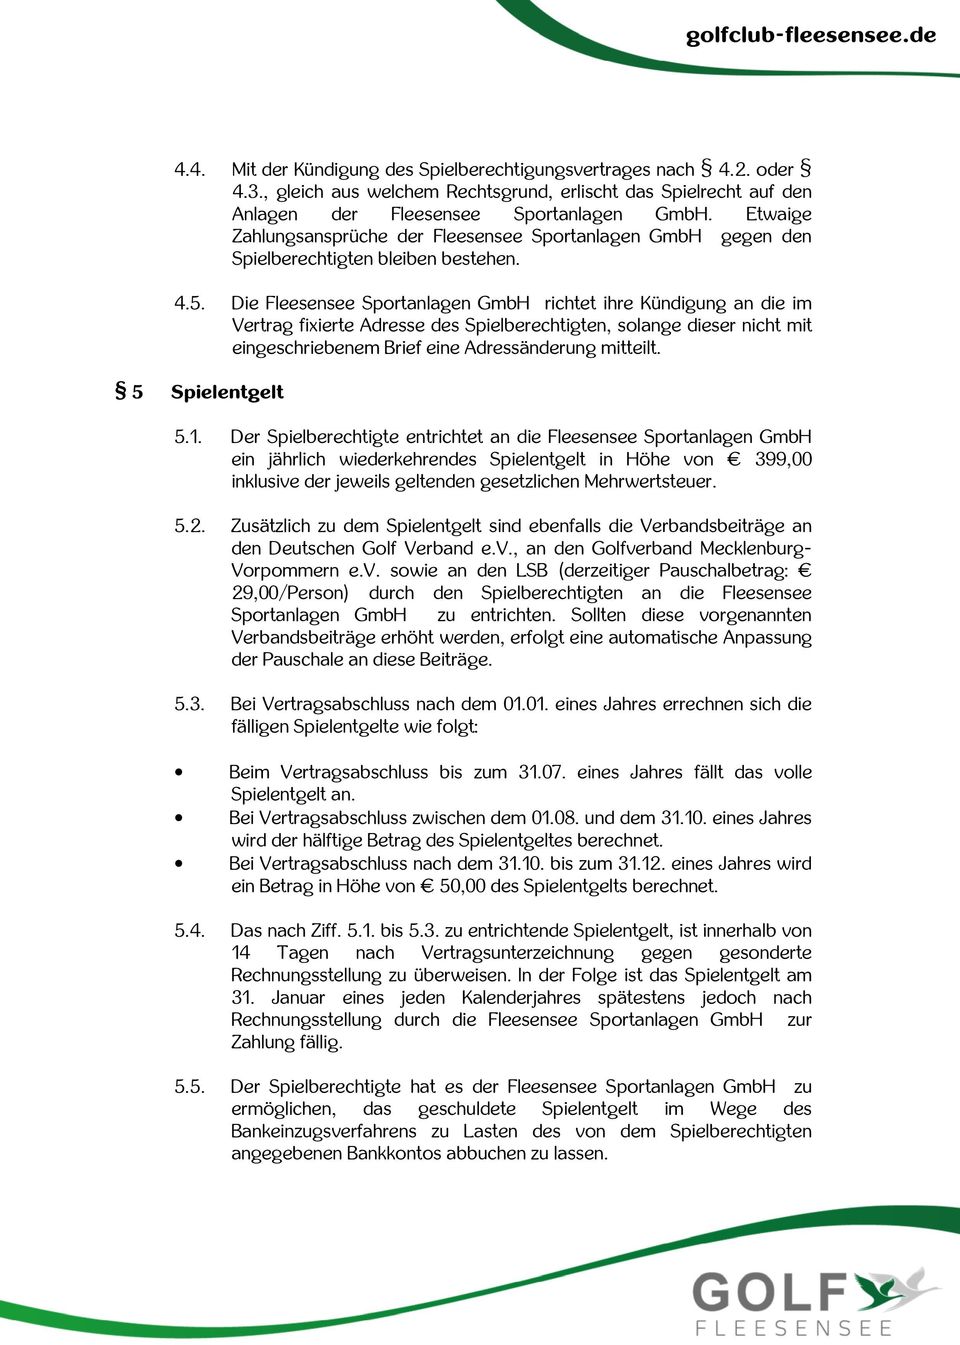 Die Fleesensee Sportanlagen GmbH richtet ihre Kündigung an die im Vertrag fixierte Adresse des Spielberechtigten, solange dieser nicht mit eingeschriebenem Brief eine Adressänderung mitteilt.